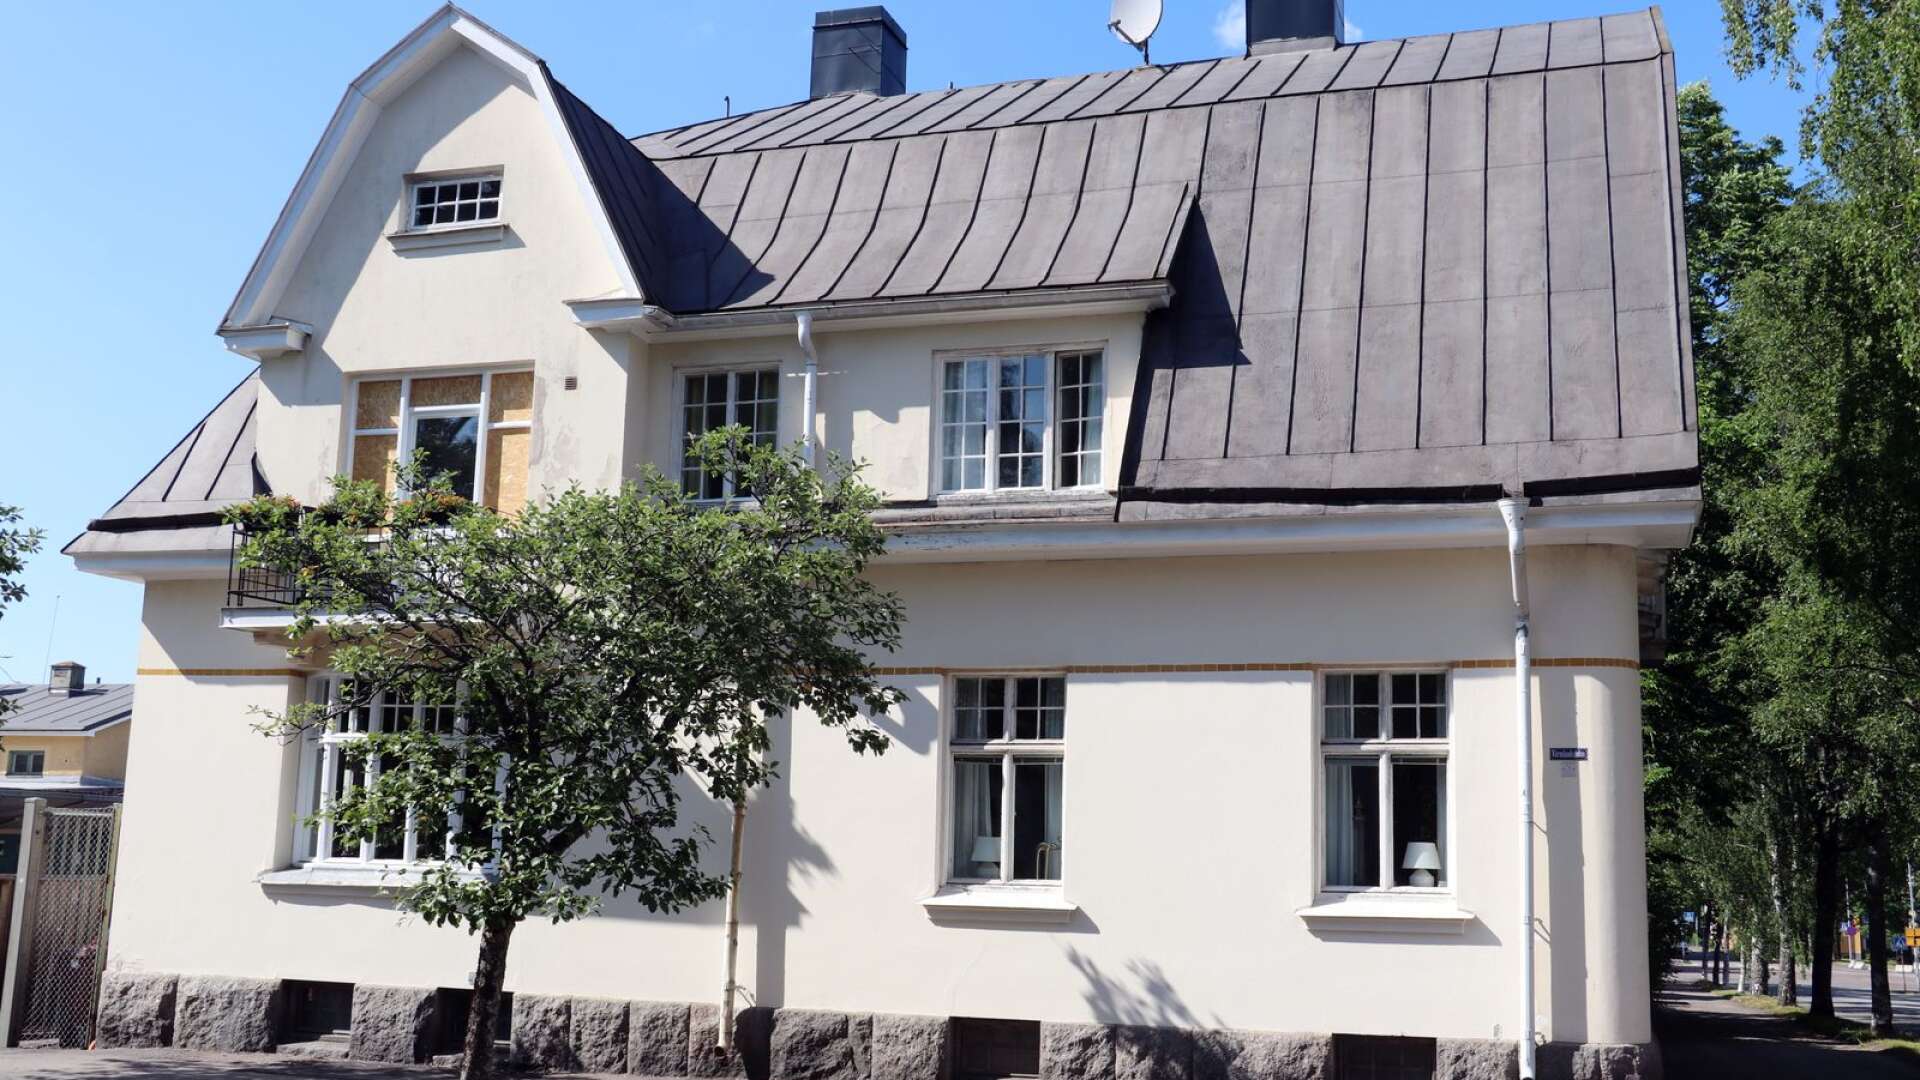 Carita och Kejll Svensson bor i den vackra disponentvillan på hörnet av Asphyttegatan och Värmlandsgatan. 